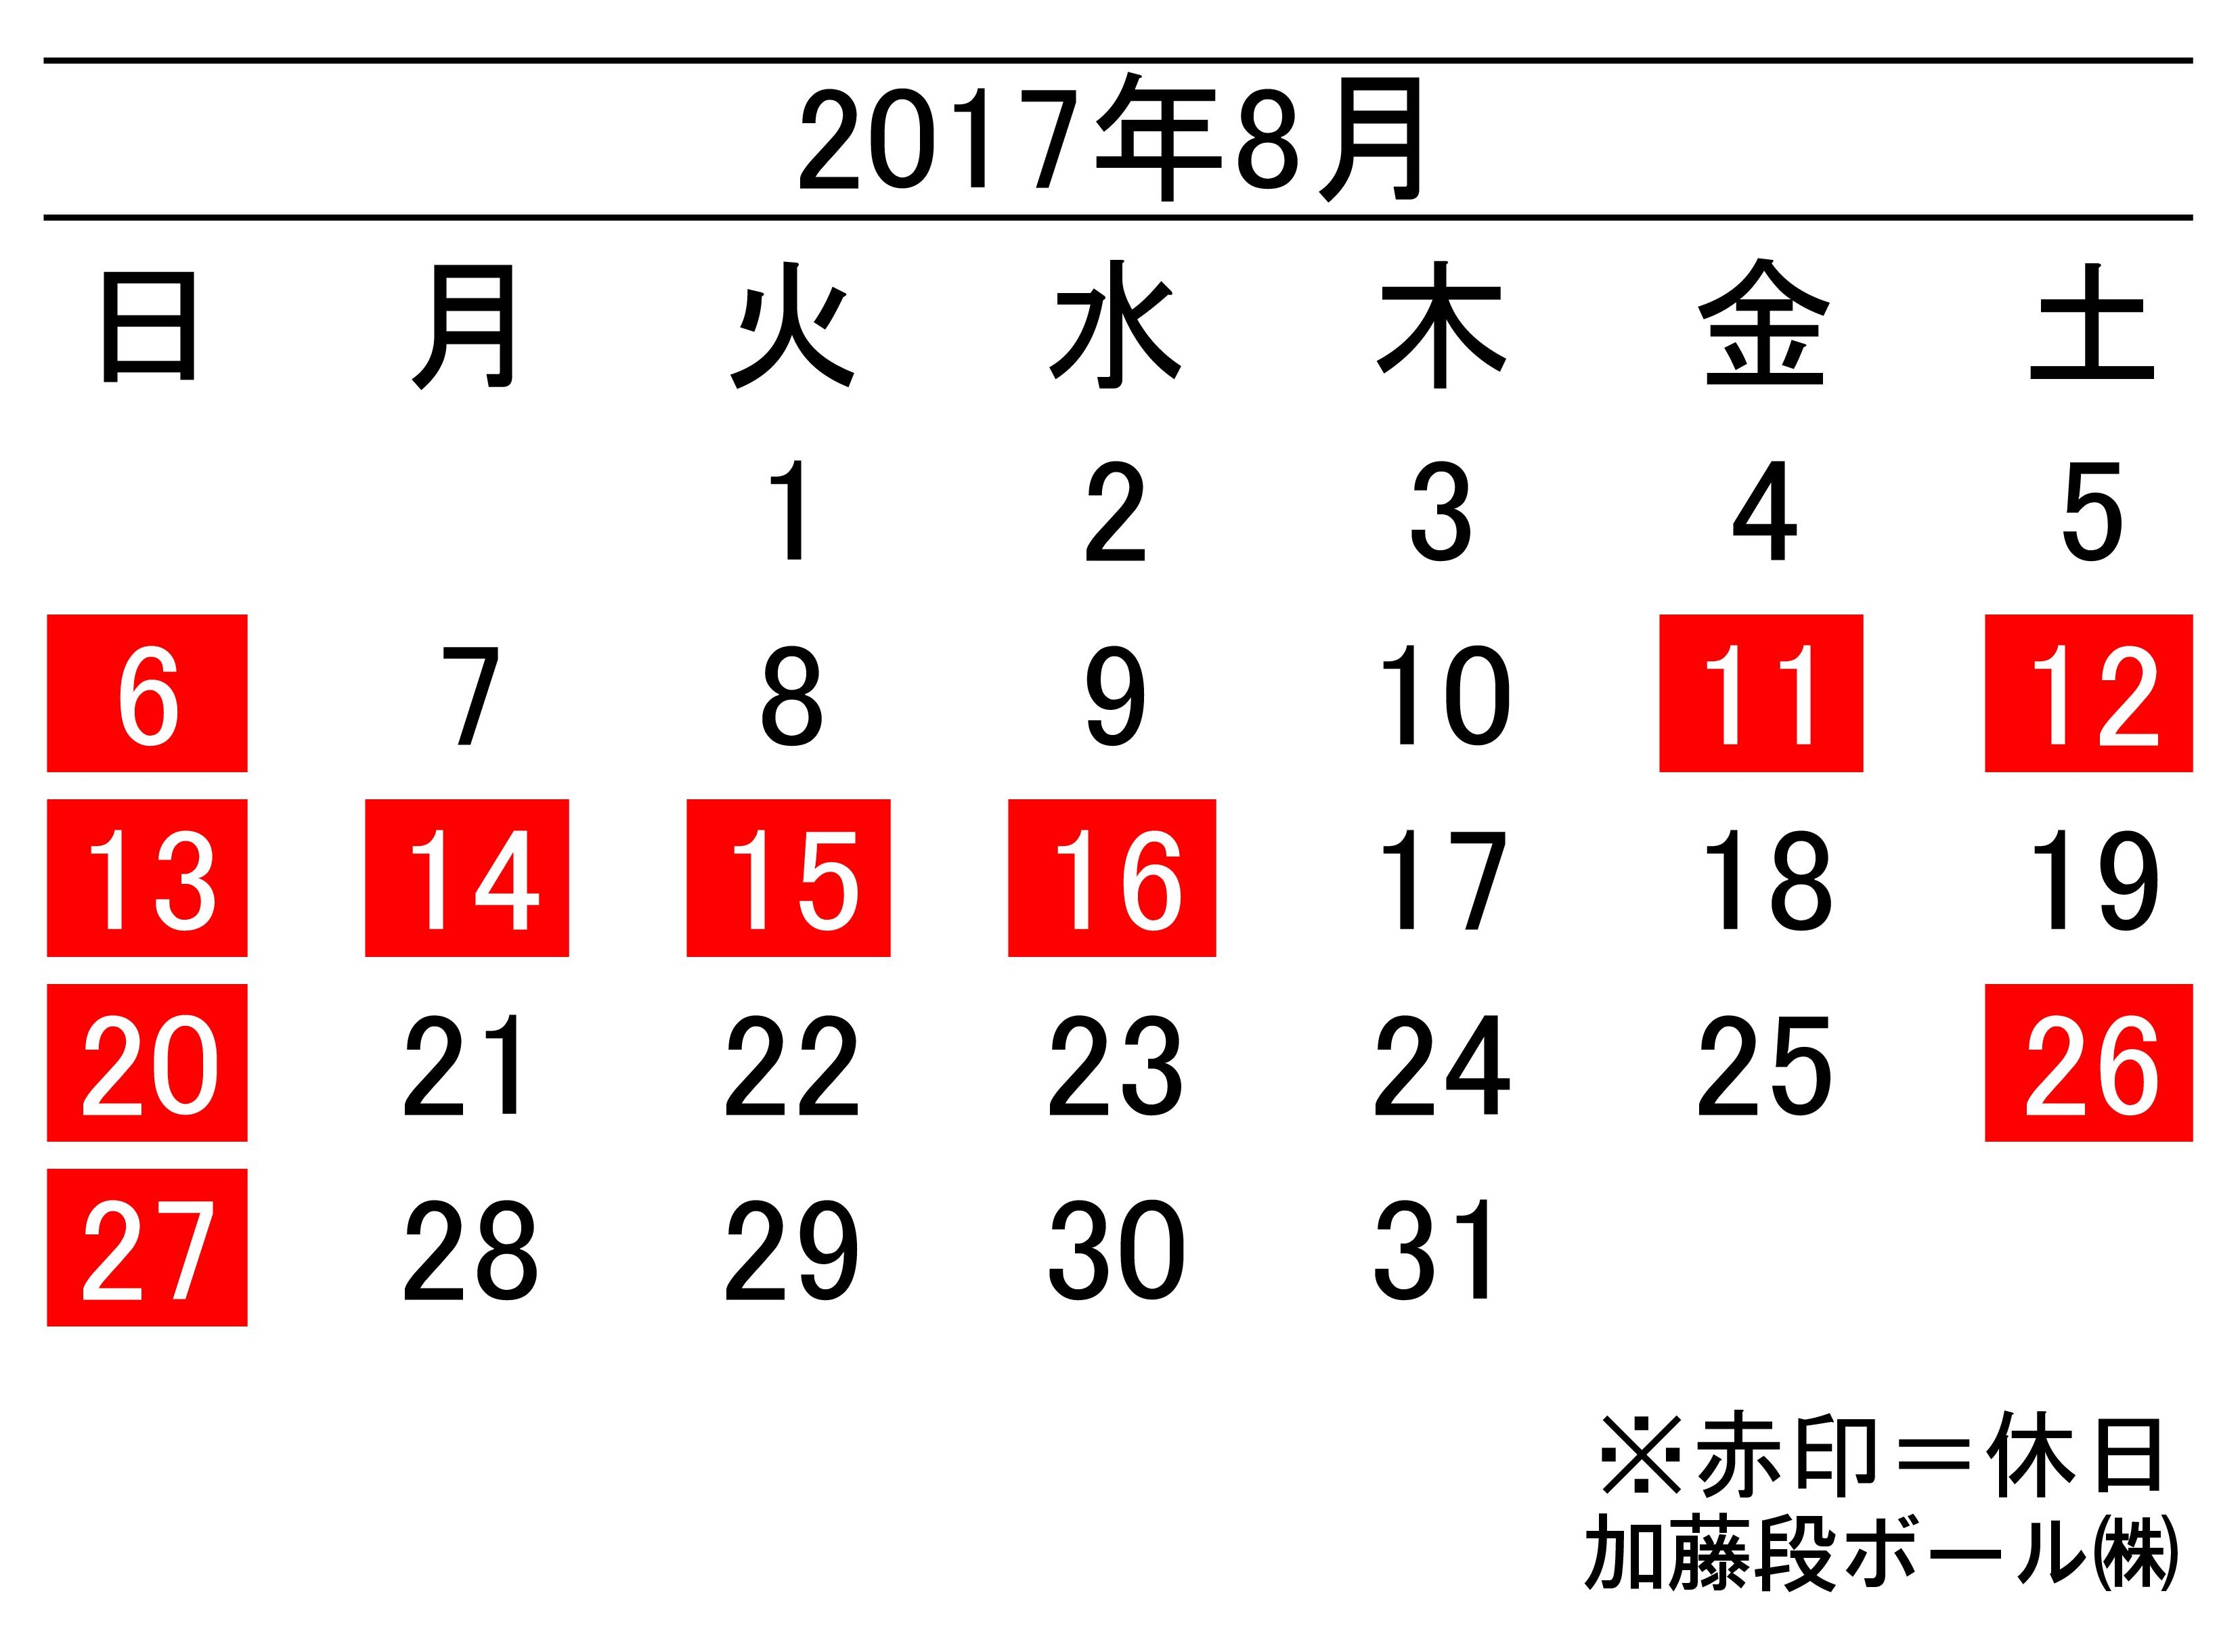 17年8月度営業日カレンダー 加藤段ボール株式会社 千葉 福島 神奈川を中心に段ボール製品 梱包資材の製造と販売